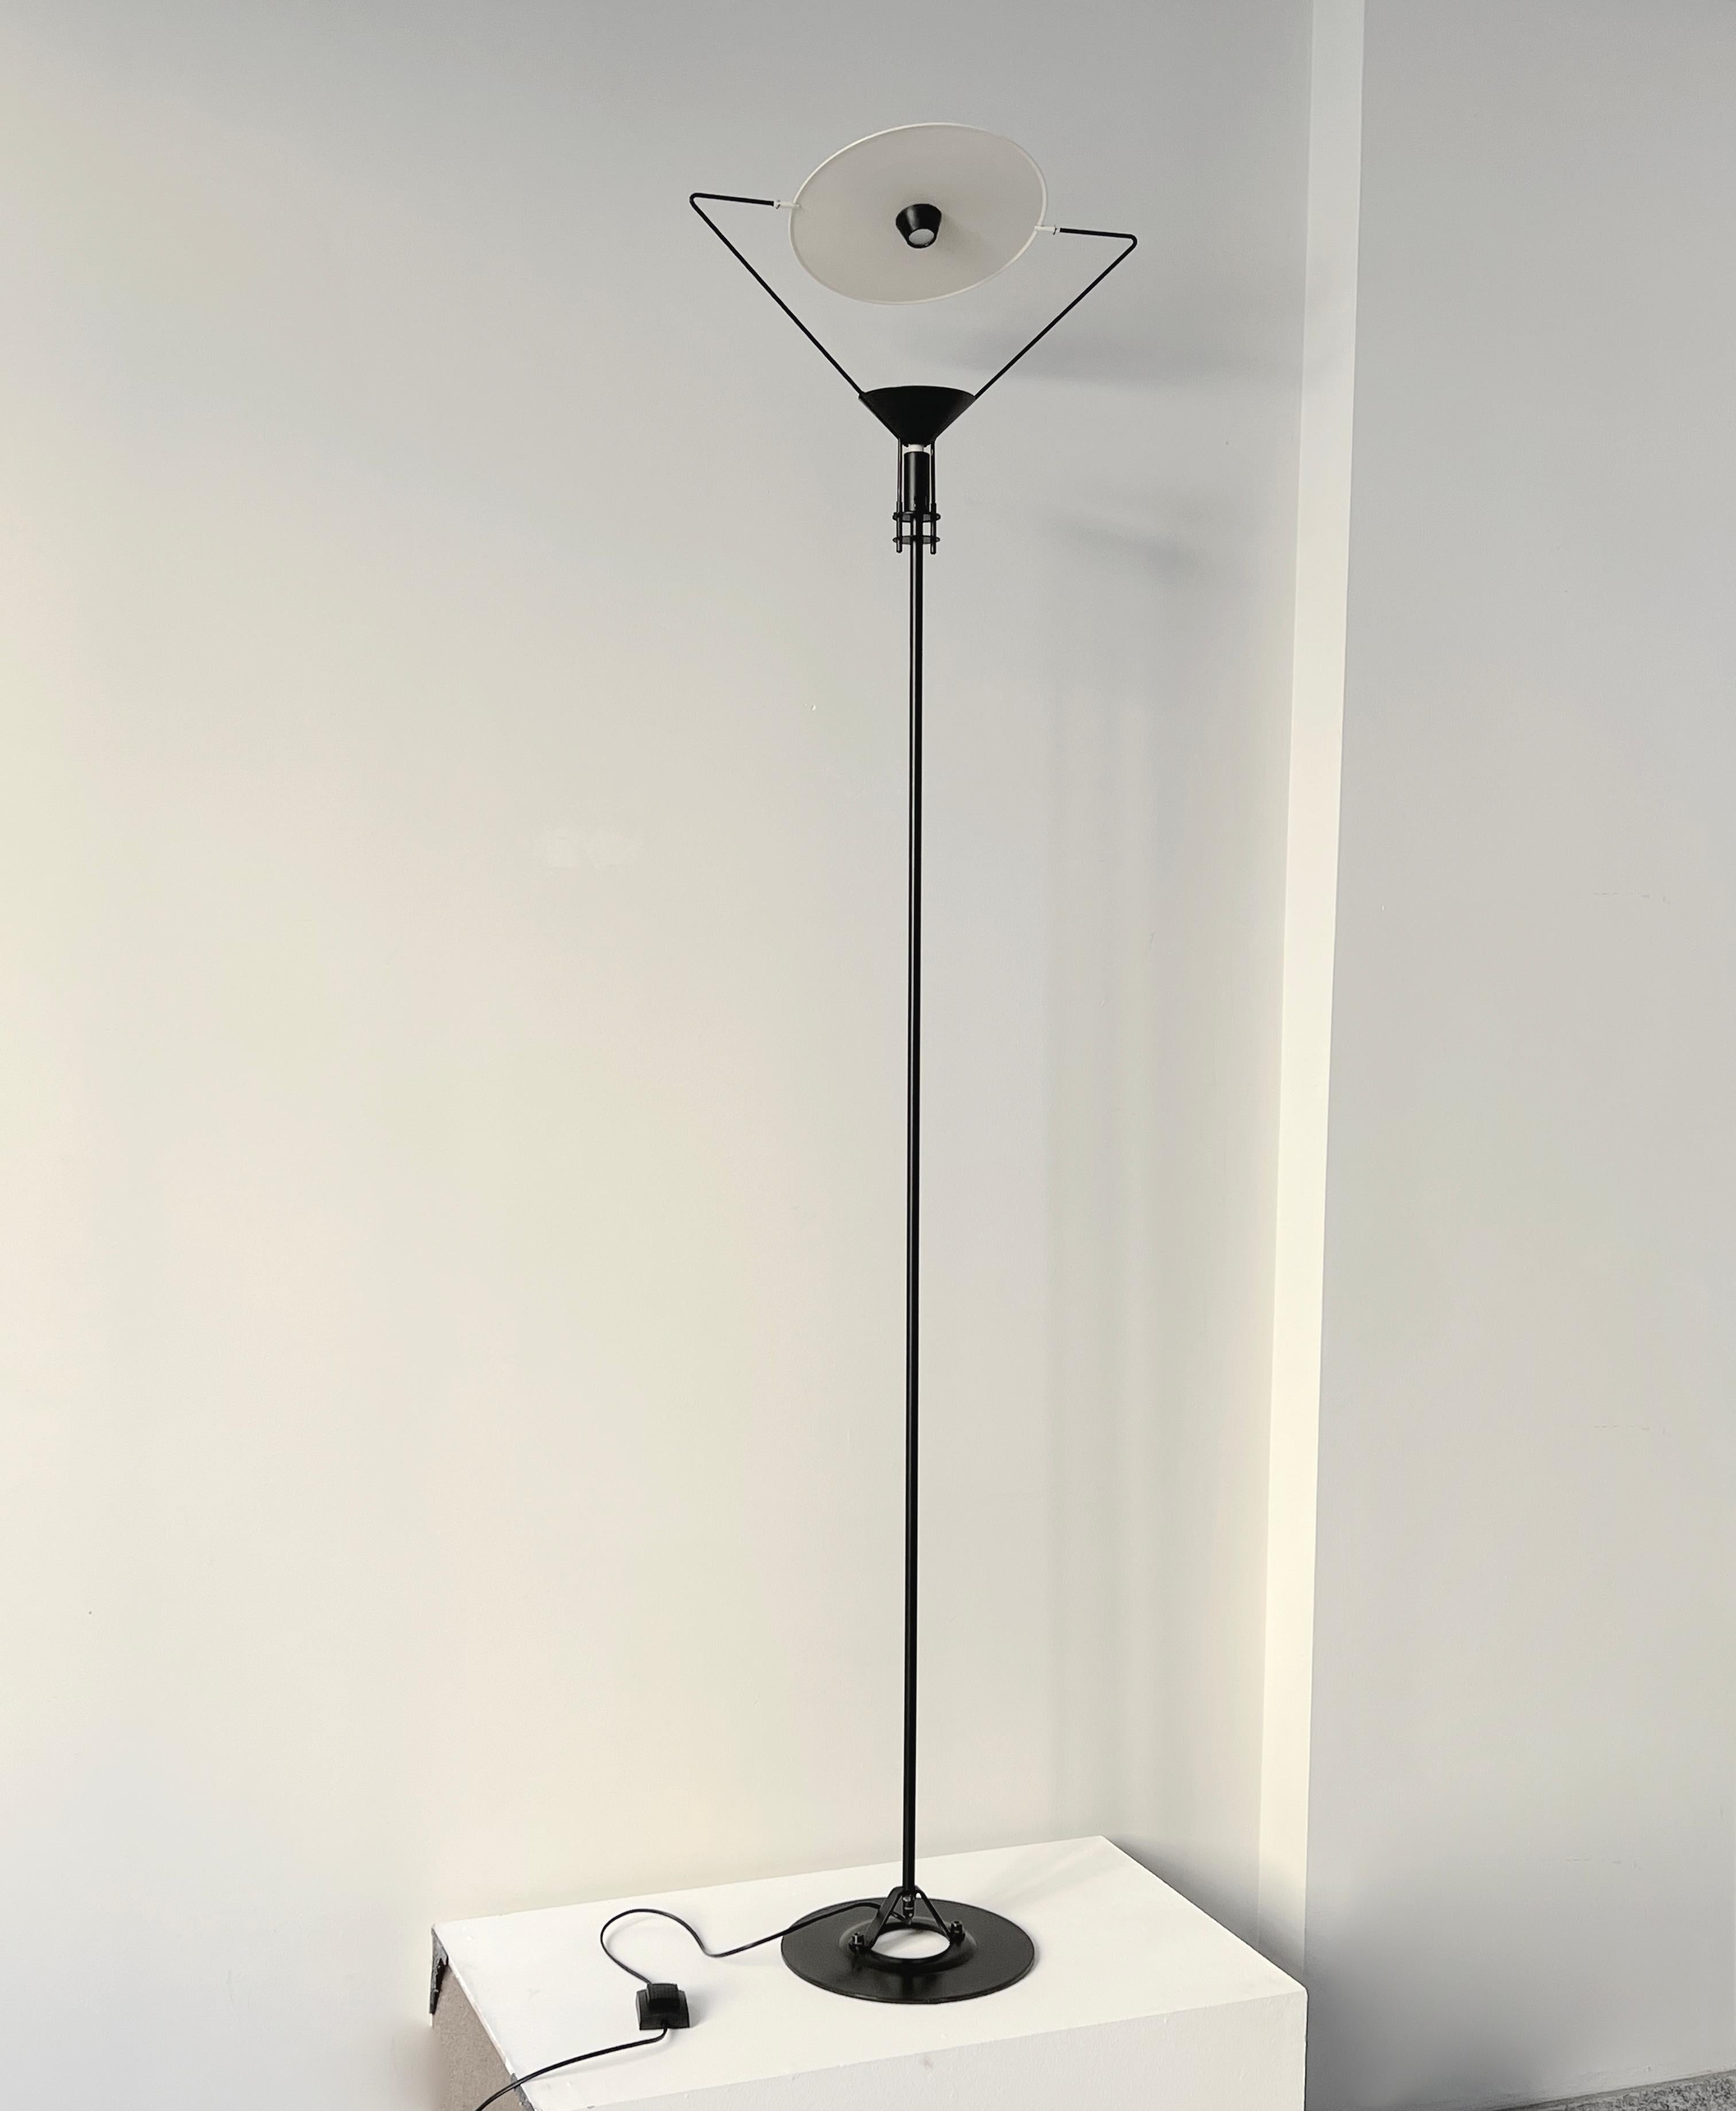 Dans les années 1980, Artemide a produit un lampadaire postmoderne italien conçu par le célèbre designer Carlo Forcolino. Cette lampe est composée d'un corps en métal laqué noir et d'un diffuseur rond très sculptural. Notamment, l'objectif est